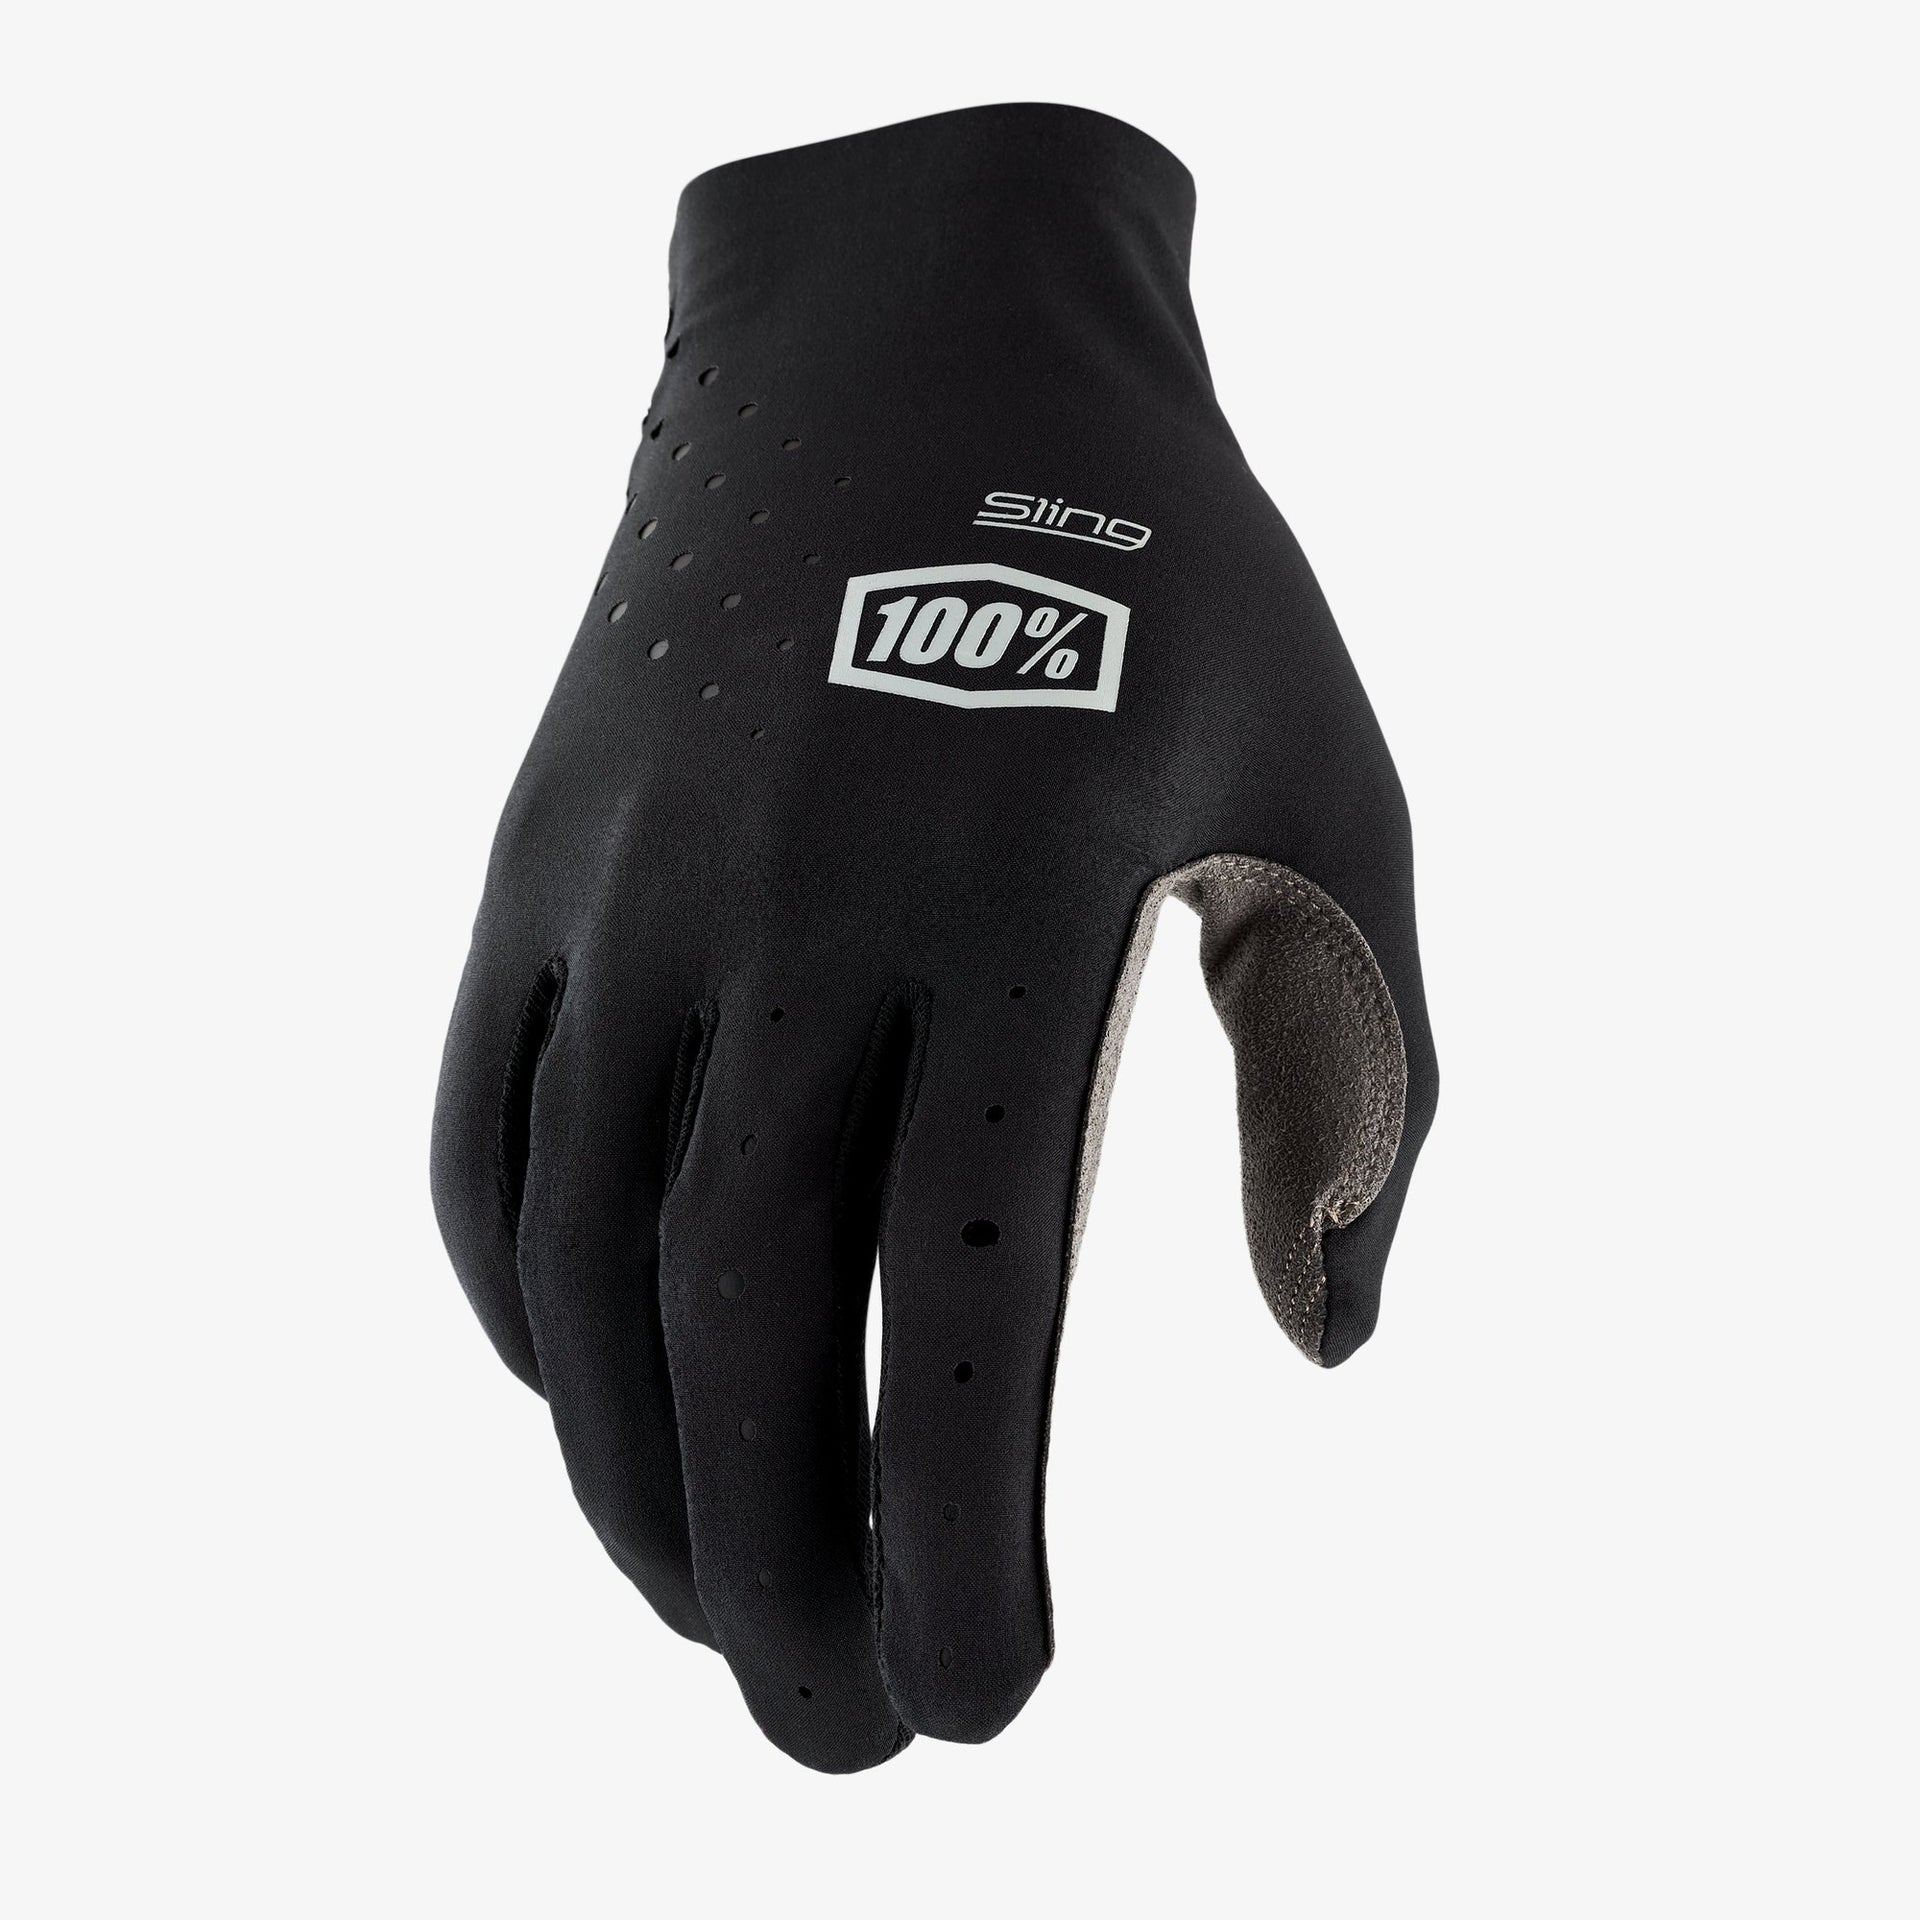 100% - Sling MX Gloves